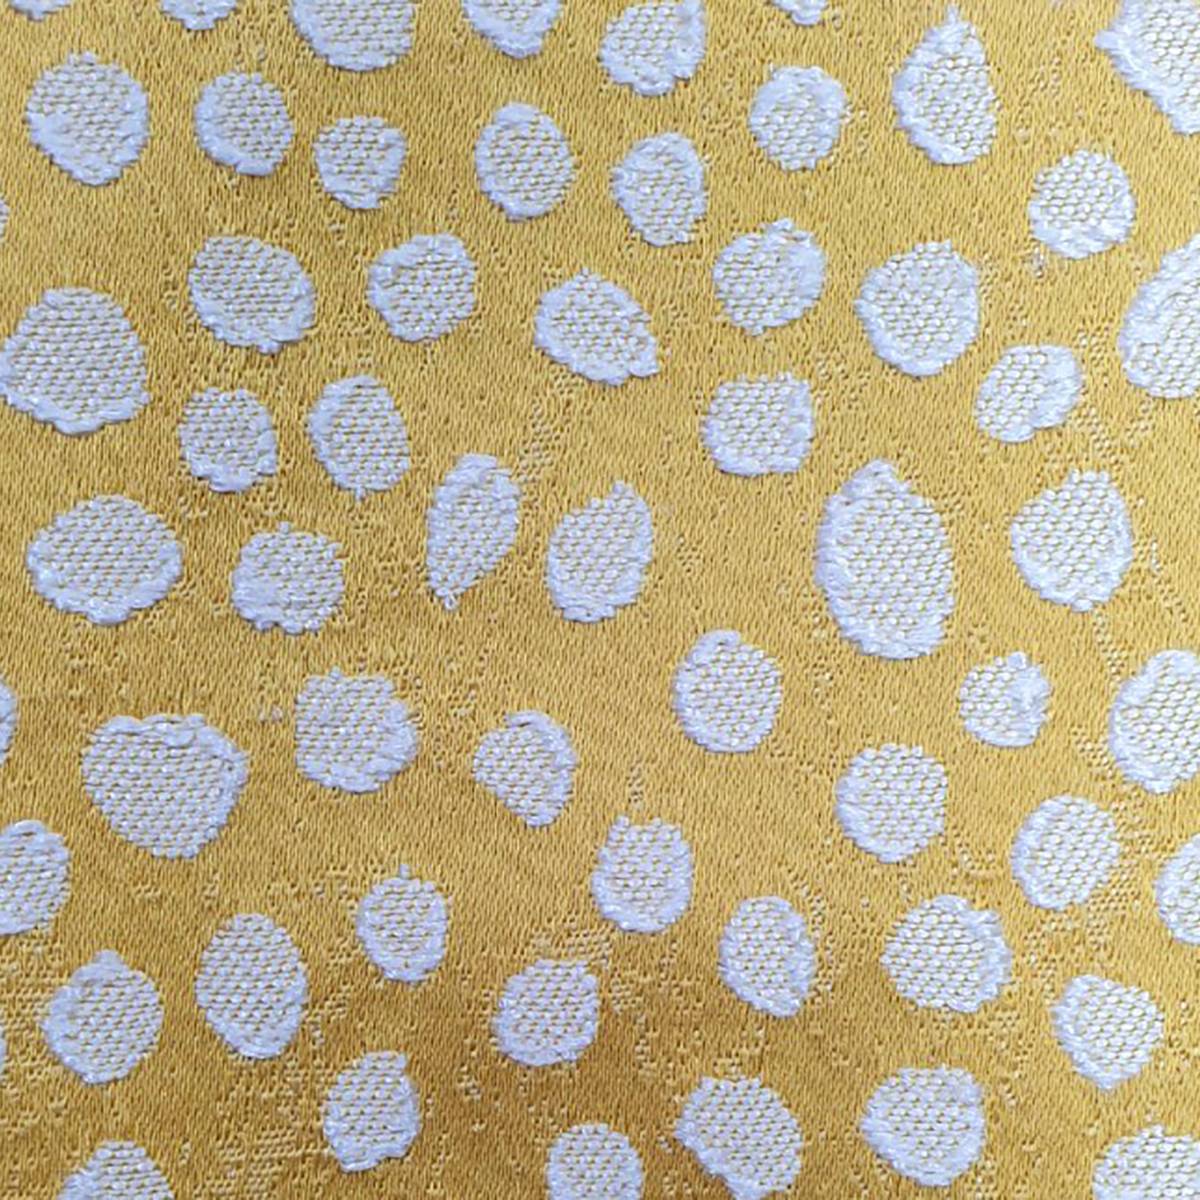 Furley Sunflower Fabric by Ashley Wilde